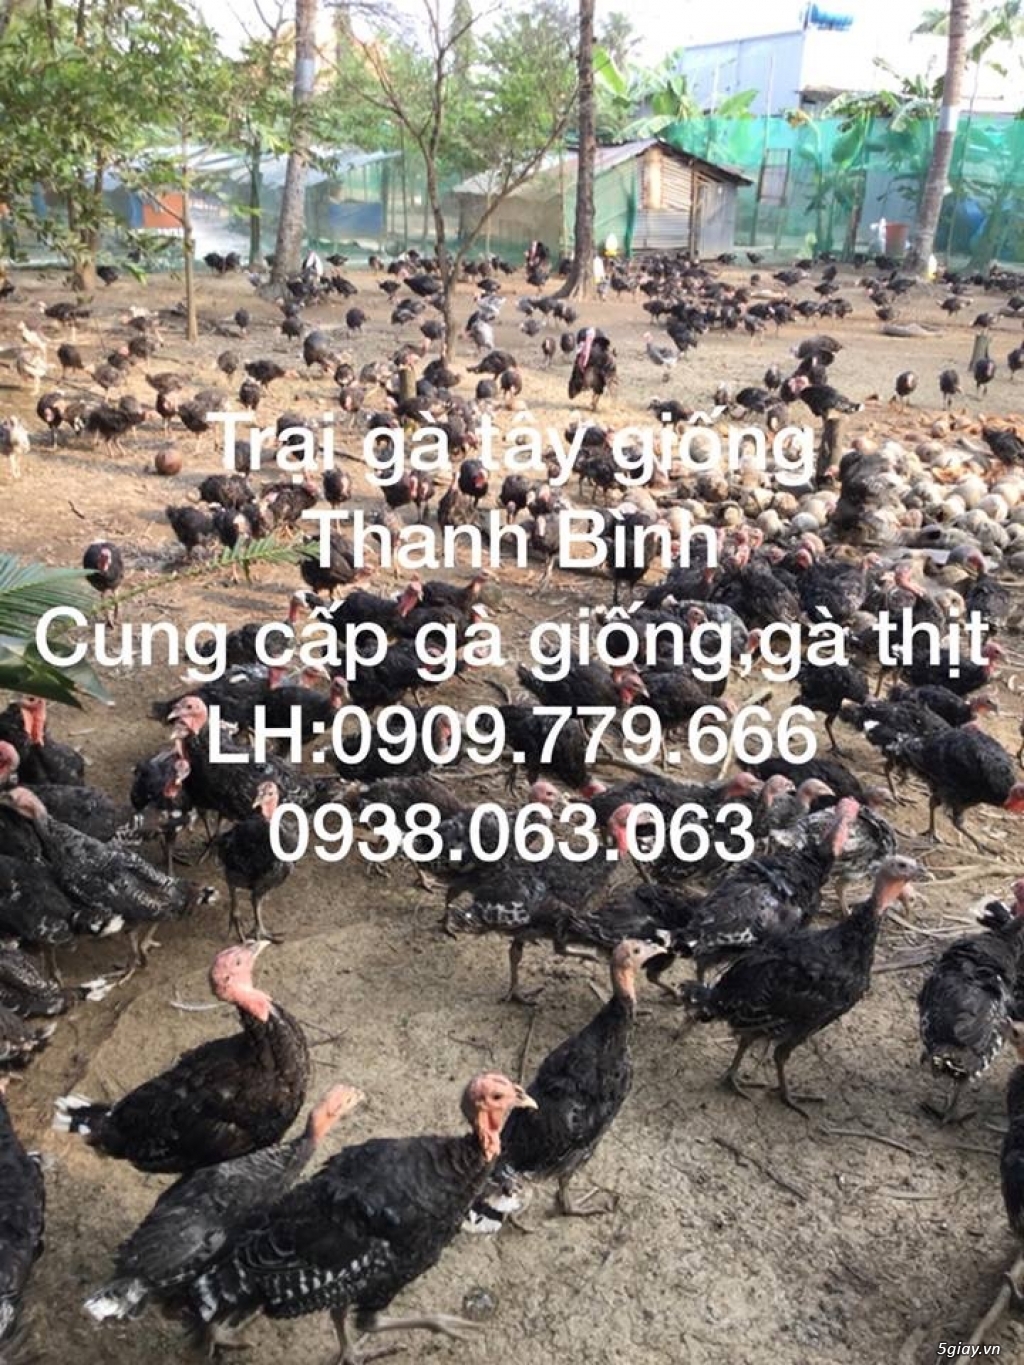 Trại gà tây(gà lôi) giống Thanh Bình.Chuyên cung cấp con giống LH:0909.779.666 - 22